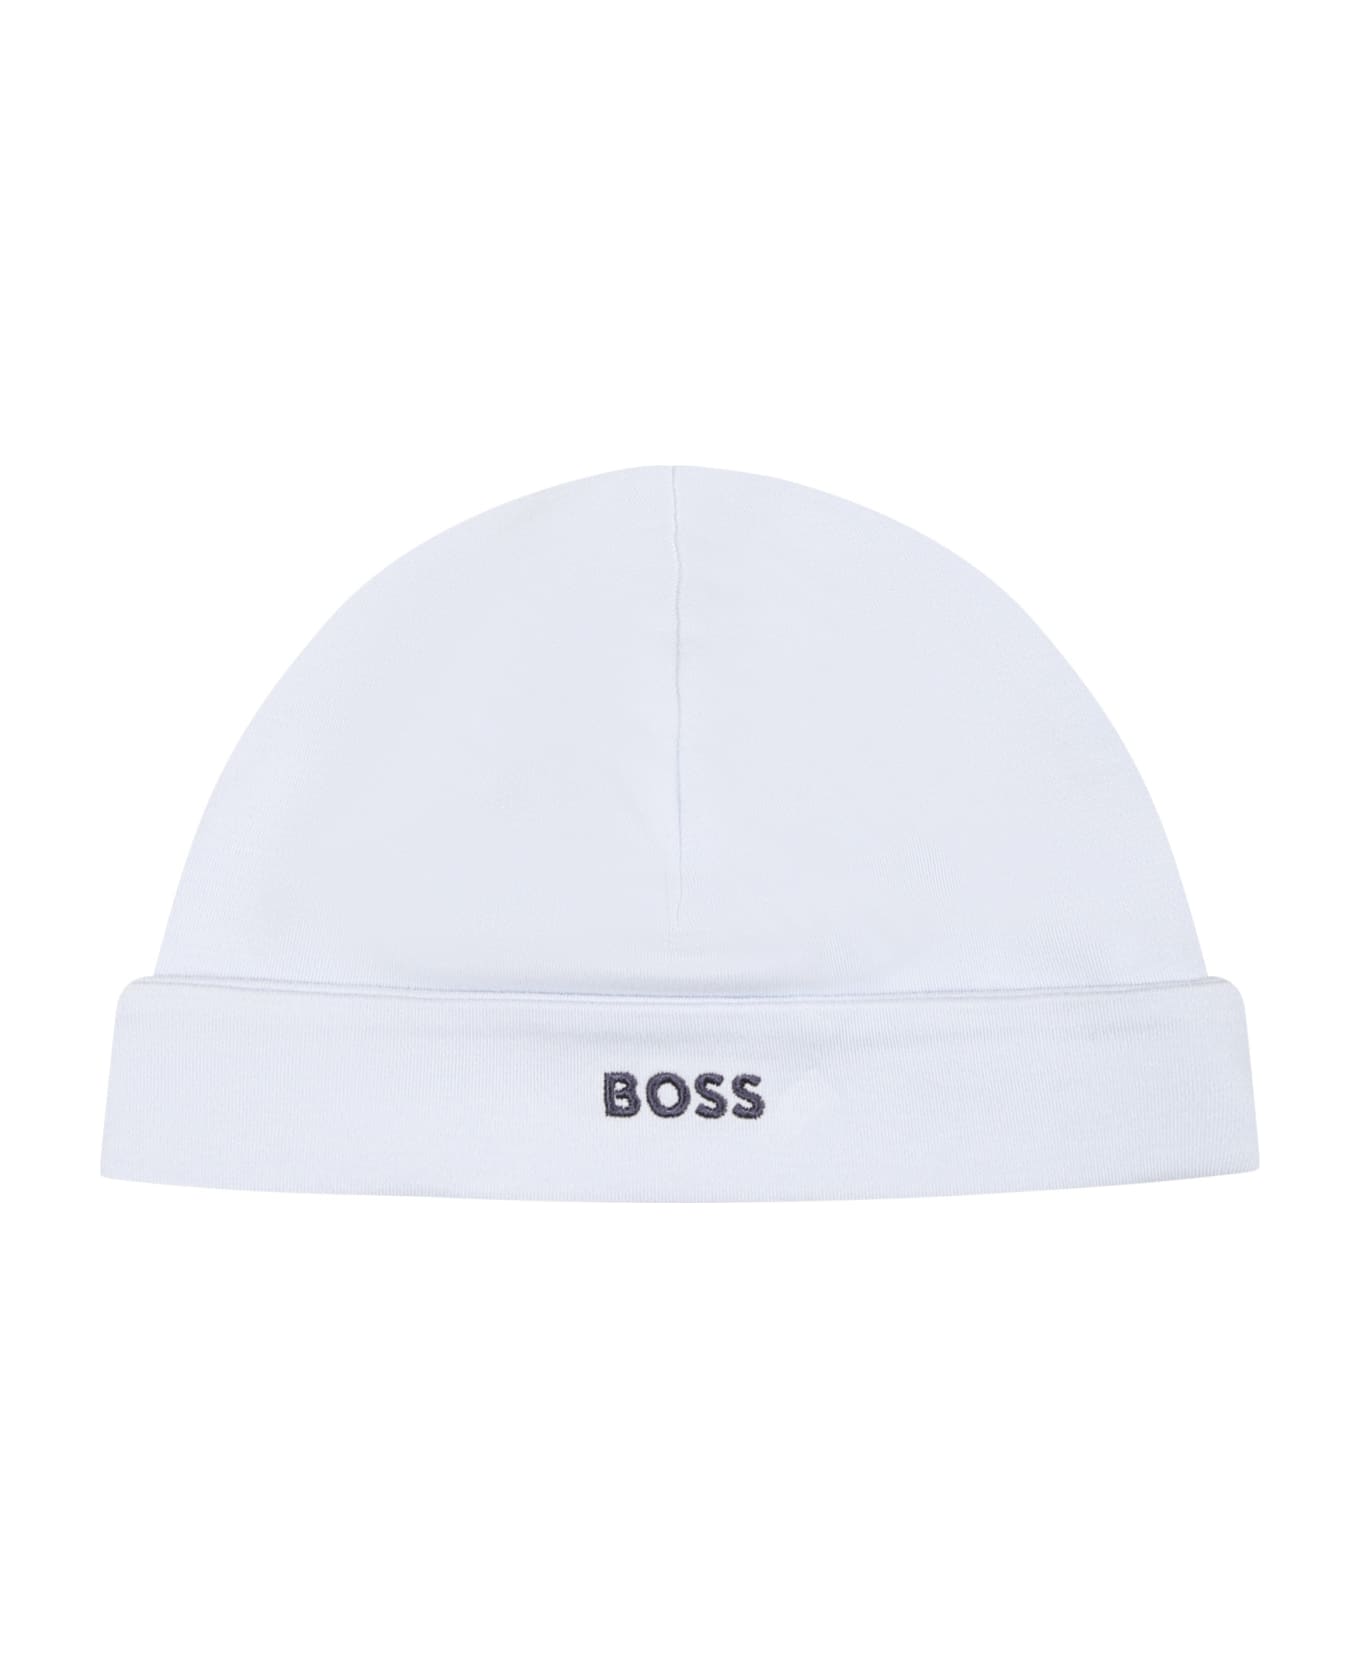 Hugo Boss Light Blue Hat For Baby Boy With Logo - Light Blue